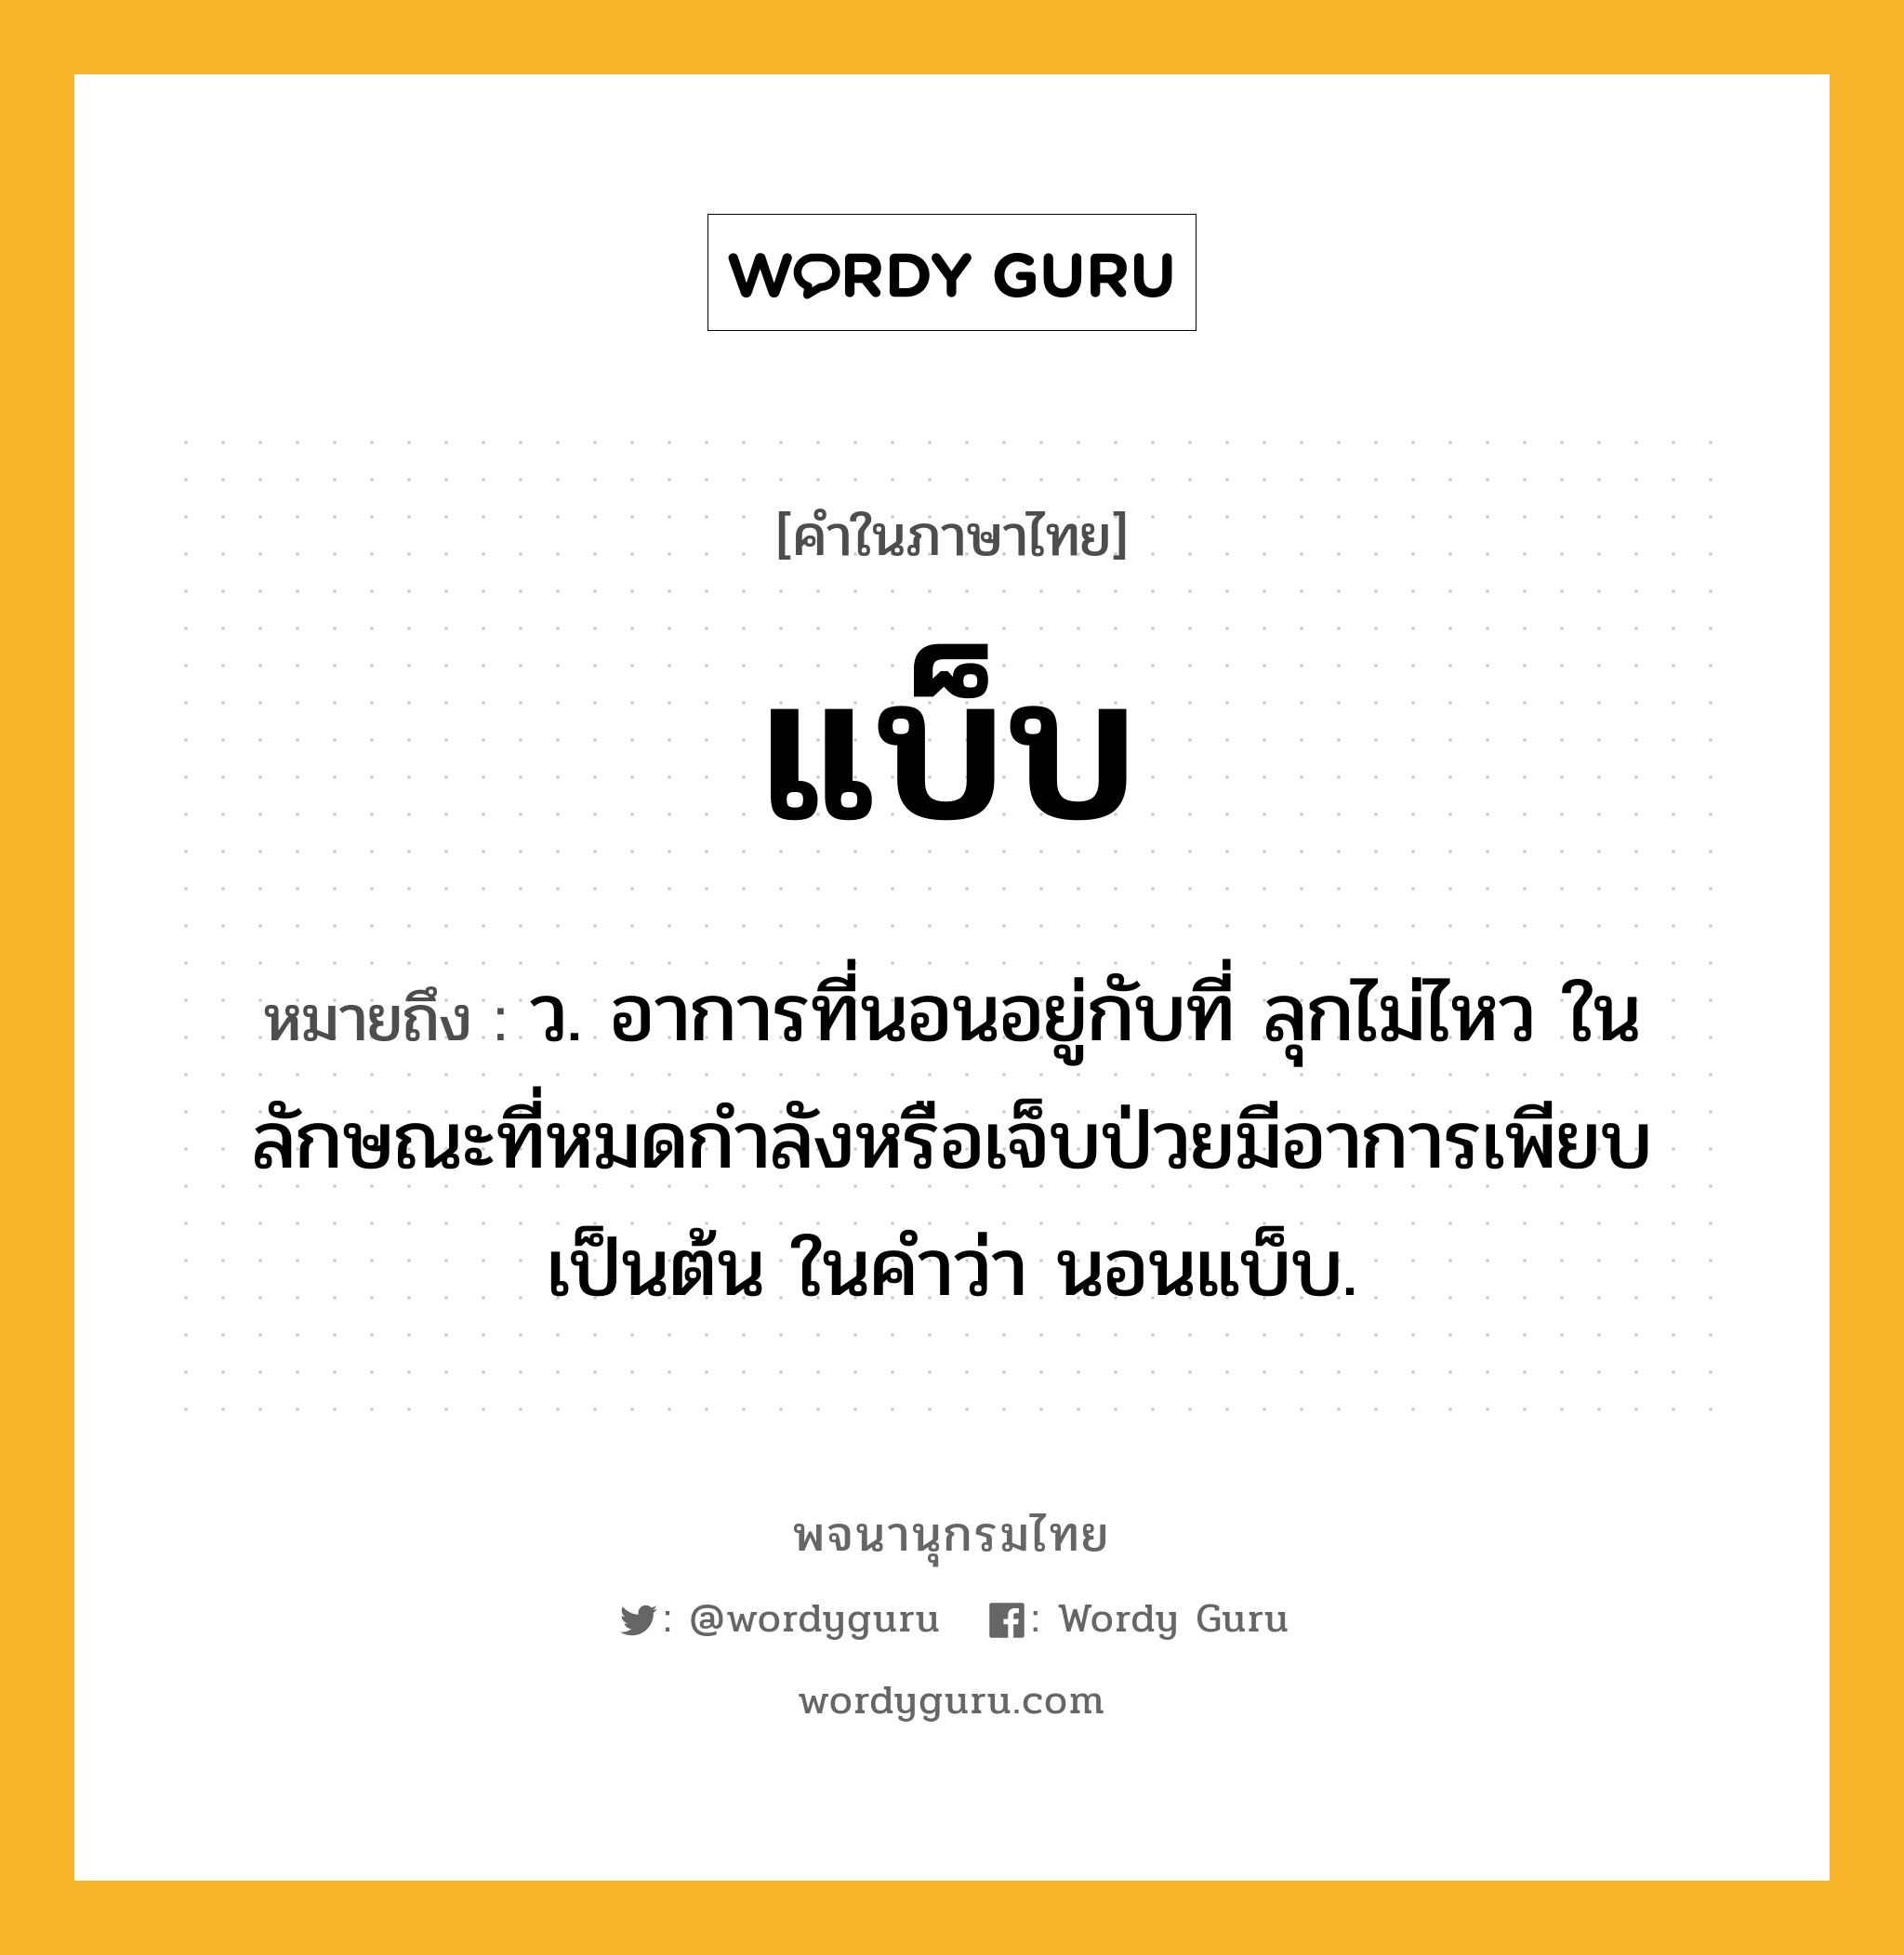 แบ็บ ความหมาย หมายถึงอะไร?, คำในภาษาไทย แบ็บ หมายถึง ว. อาการที่นอนอยู่กับที่ ลุกไม่ไหว ในลักษณะที่หมดกําลังหรือเจ็บป่วยมีอาการเพียบเป็นต้น ในคําว่า นอนแบ็บ.